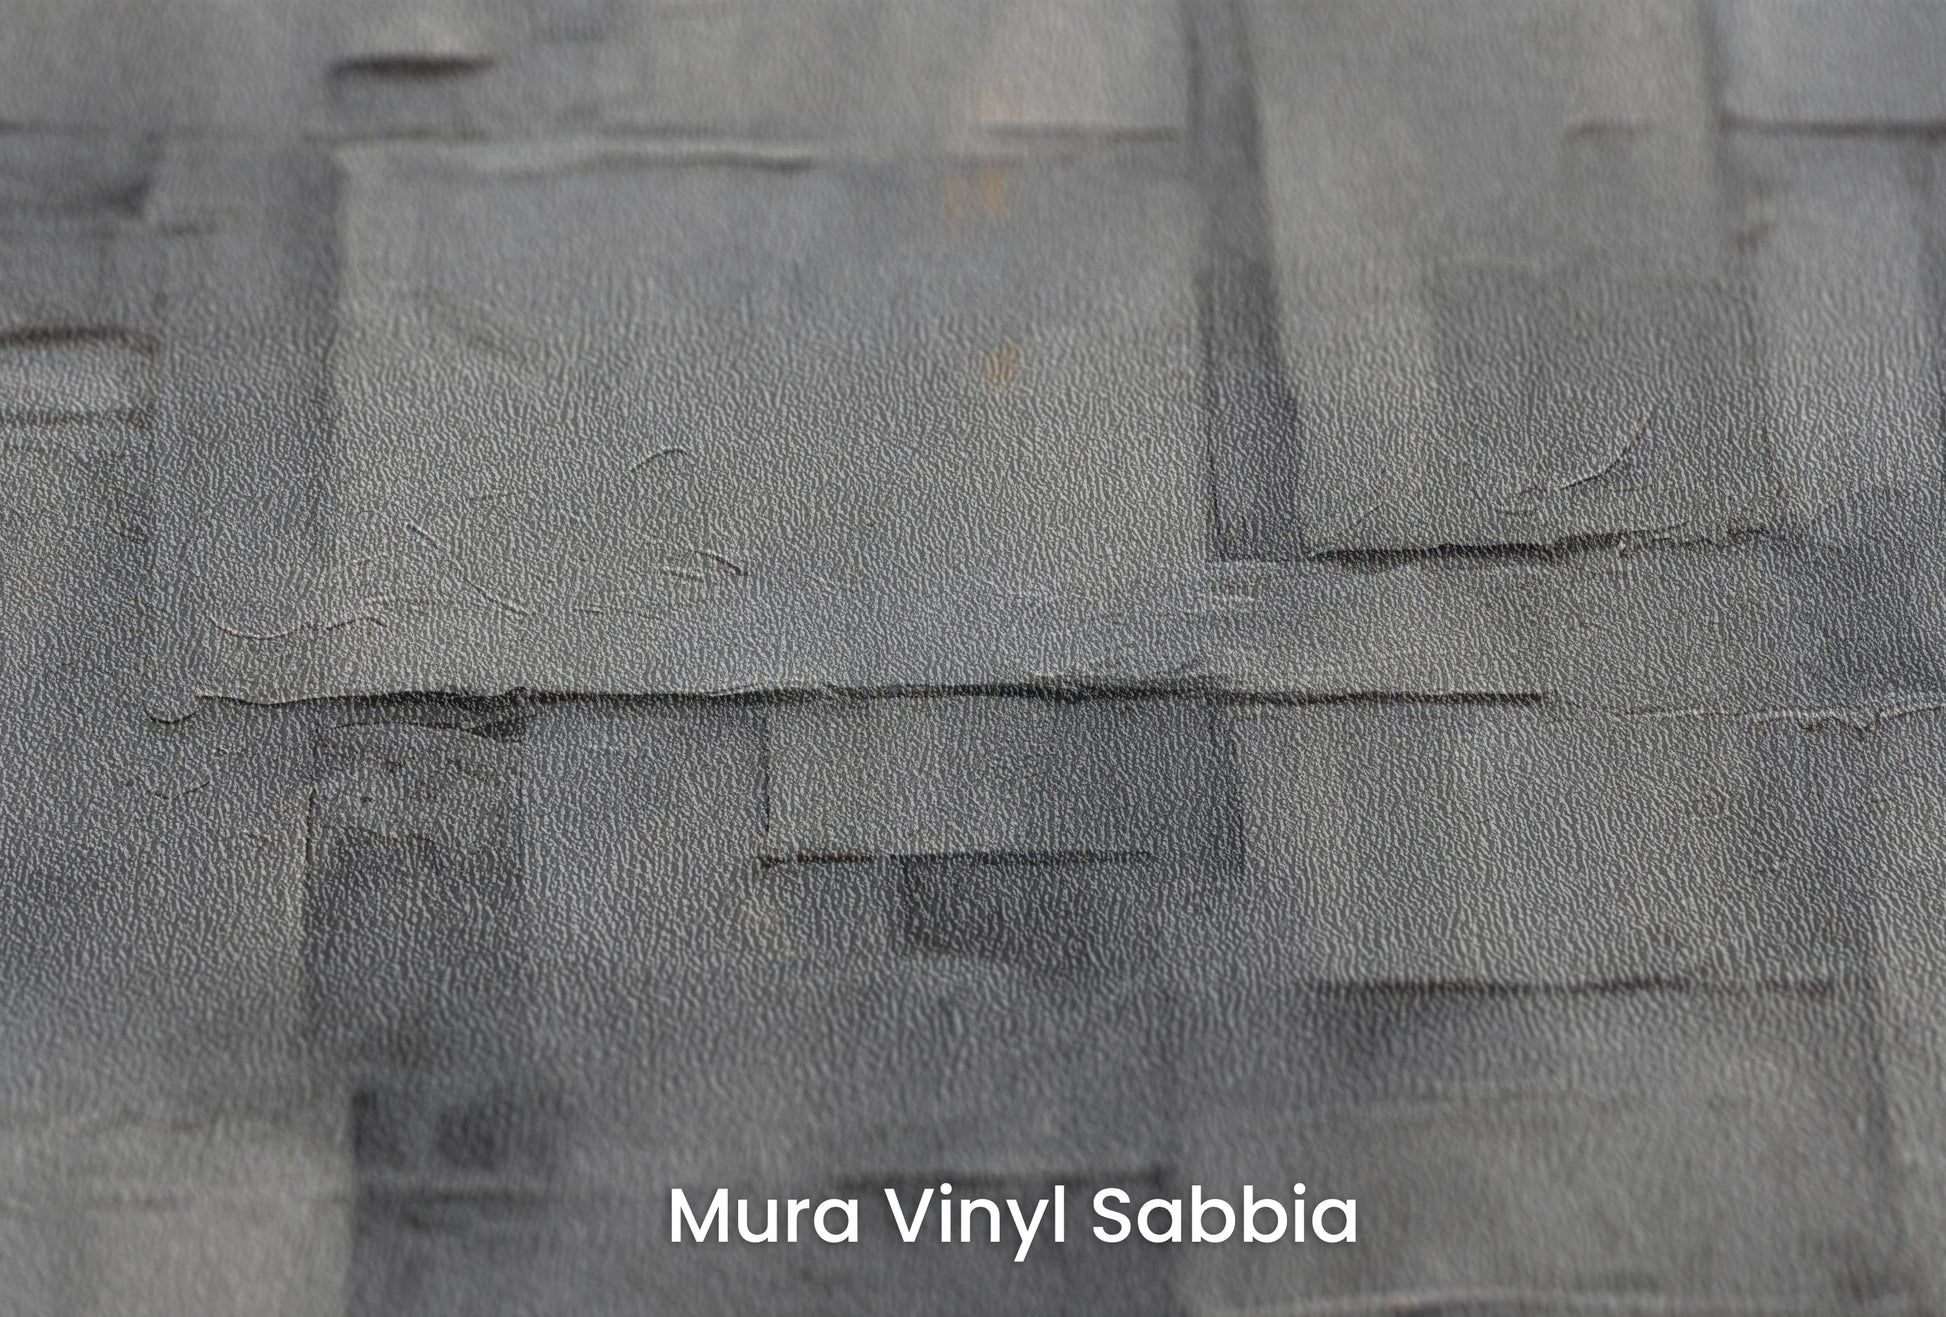 Zbliżenie na artystyczną fototapetę o nazwie Urban Cubism na podłożu Mura Vinyl Sabbia struktura grubego ziarna piasku.